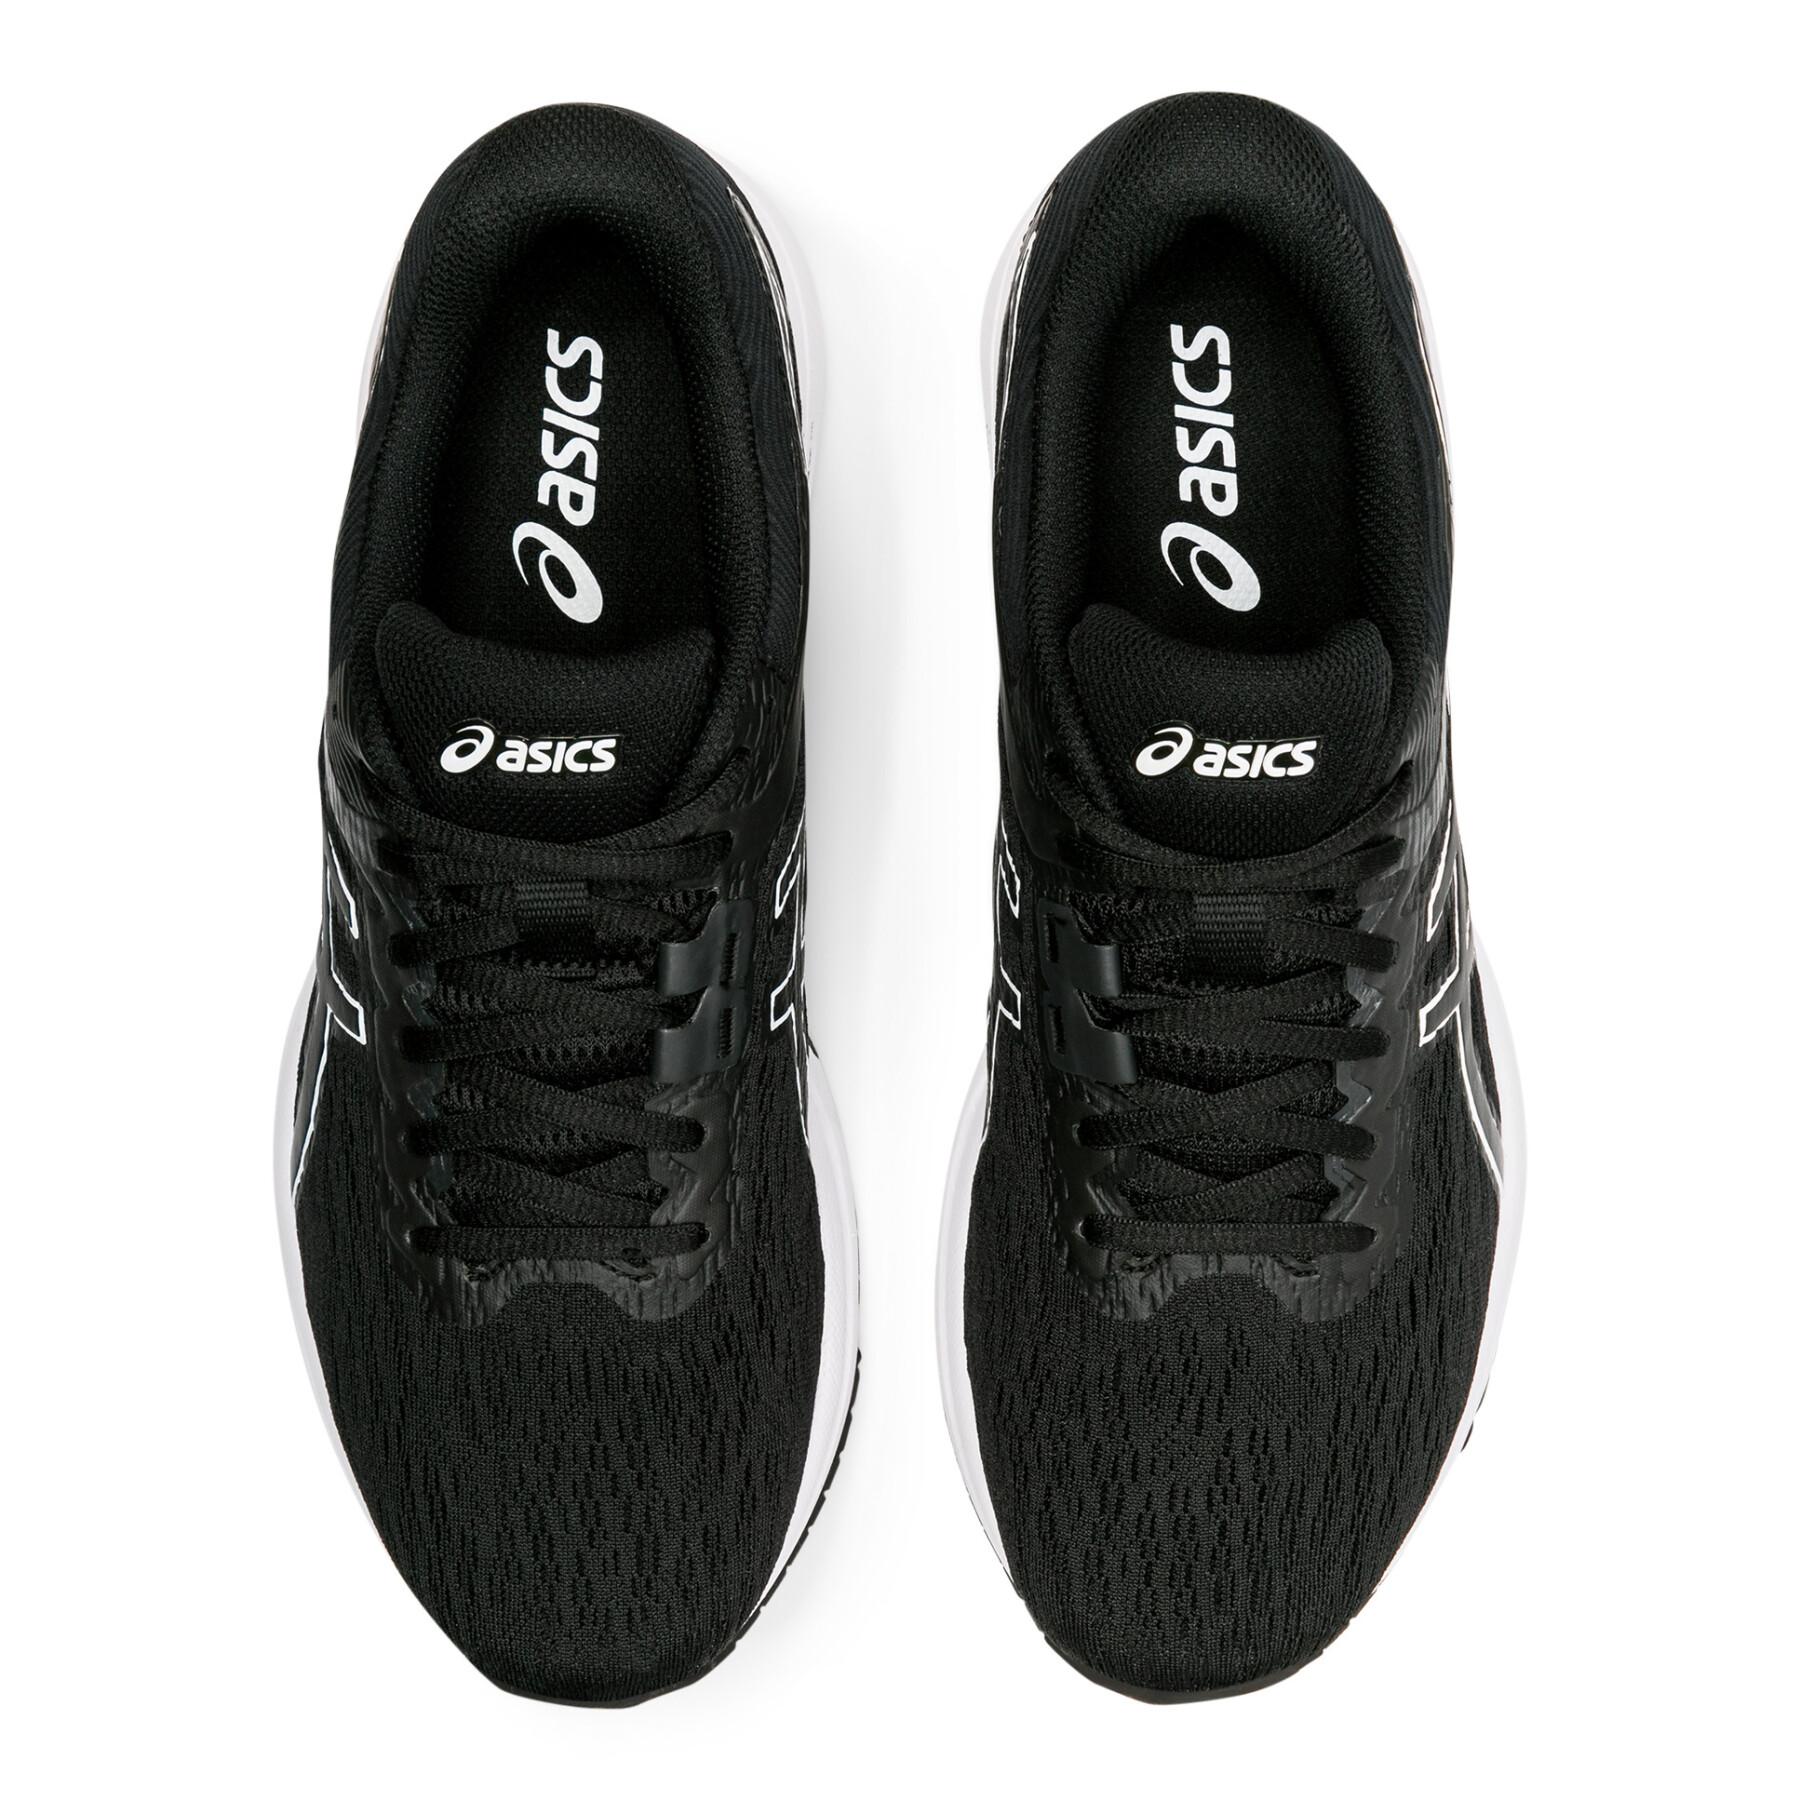 Schuhe Asics Gt-800